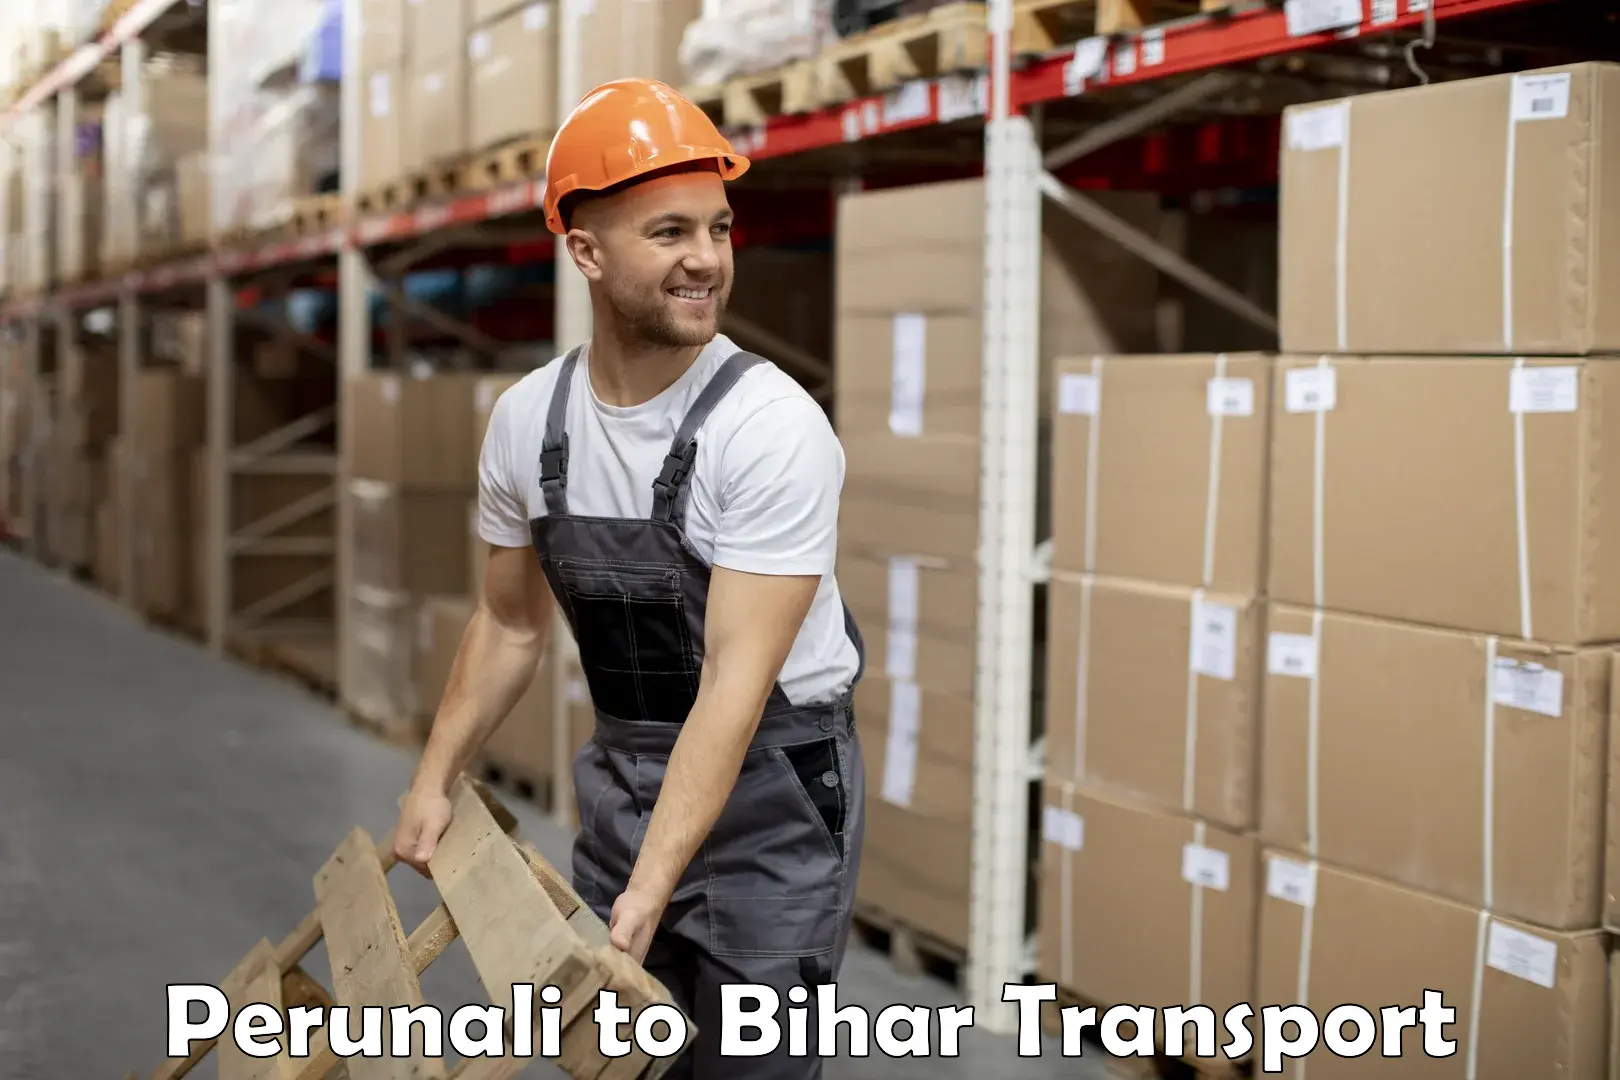 Truck transport companies in India Perunali to Bihar